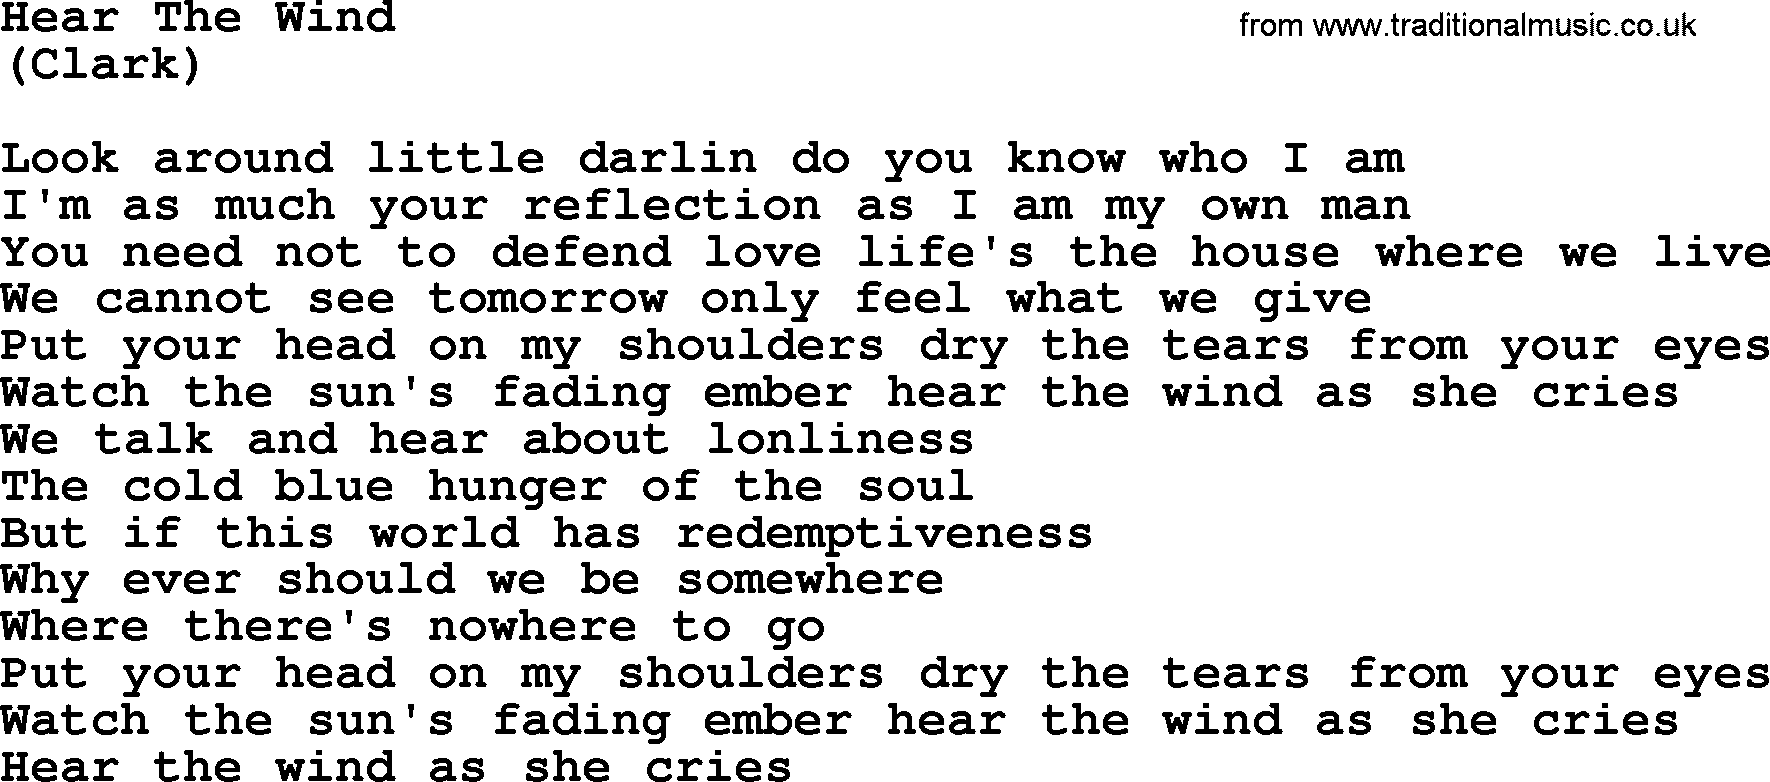 The Byrds song Hear The Wind, lyrics